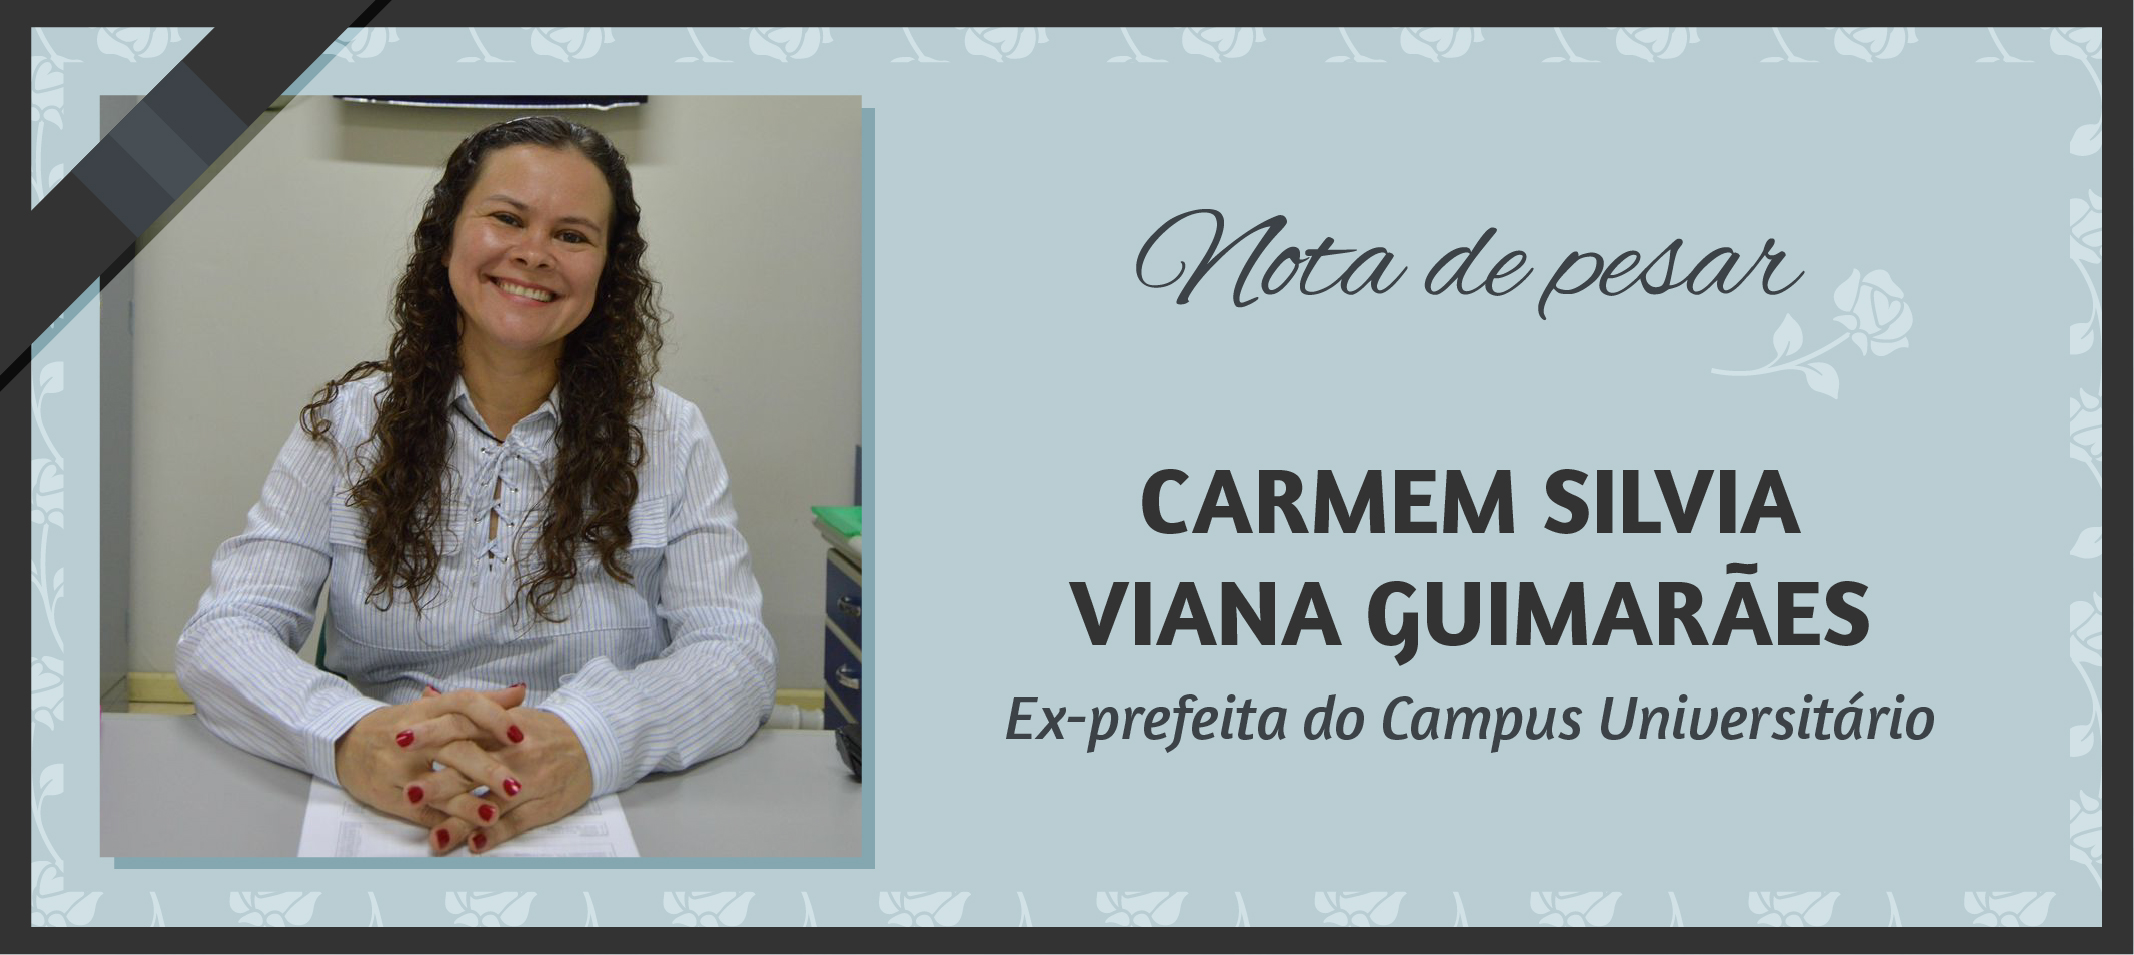 Nota de Pesar - Ex- prefeita do Campus Universitário, arquiteta Carmem Sílvia Viana Guimarães